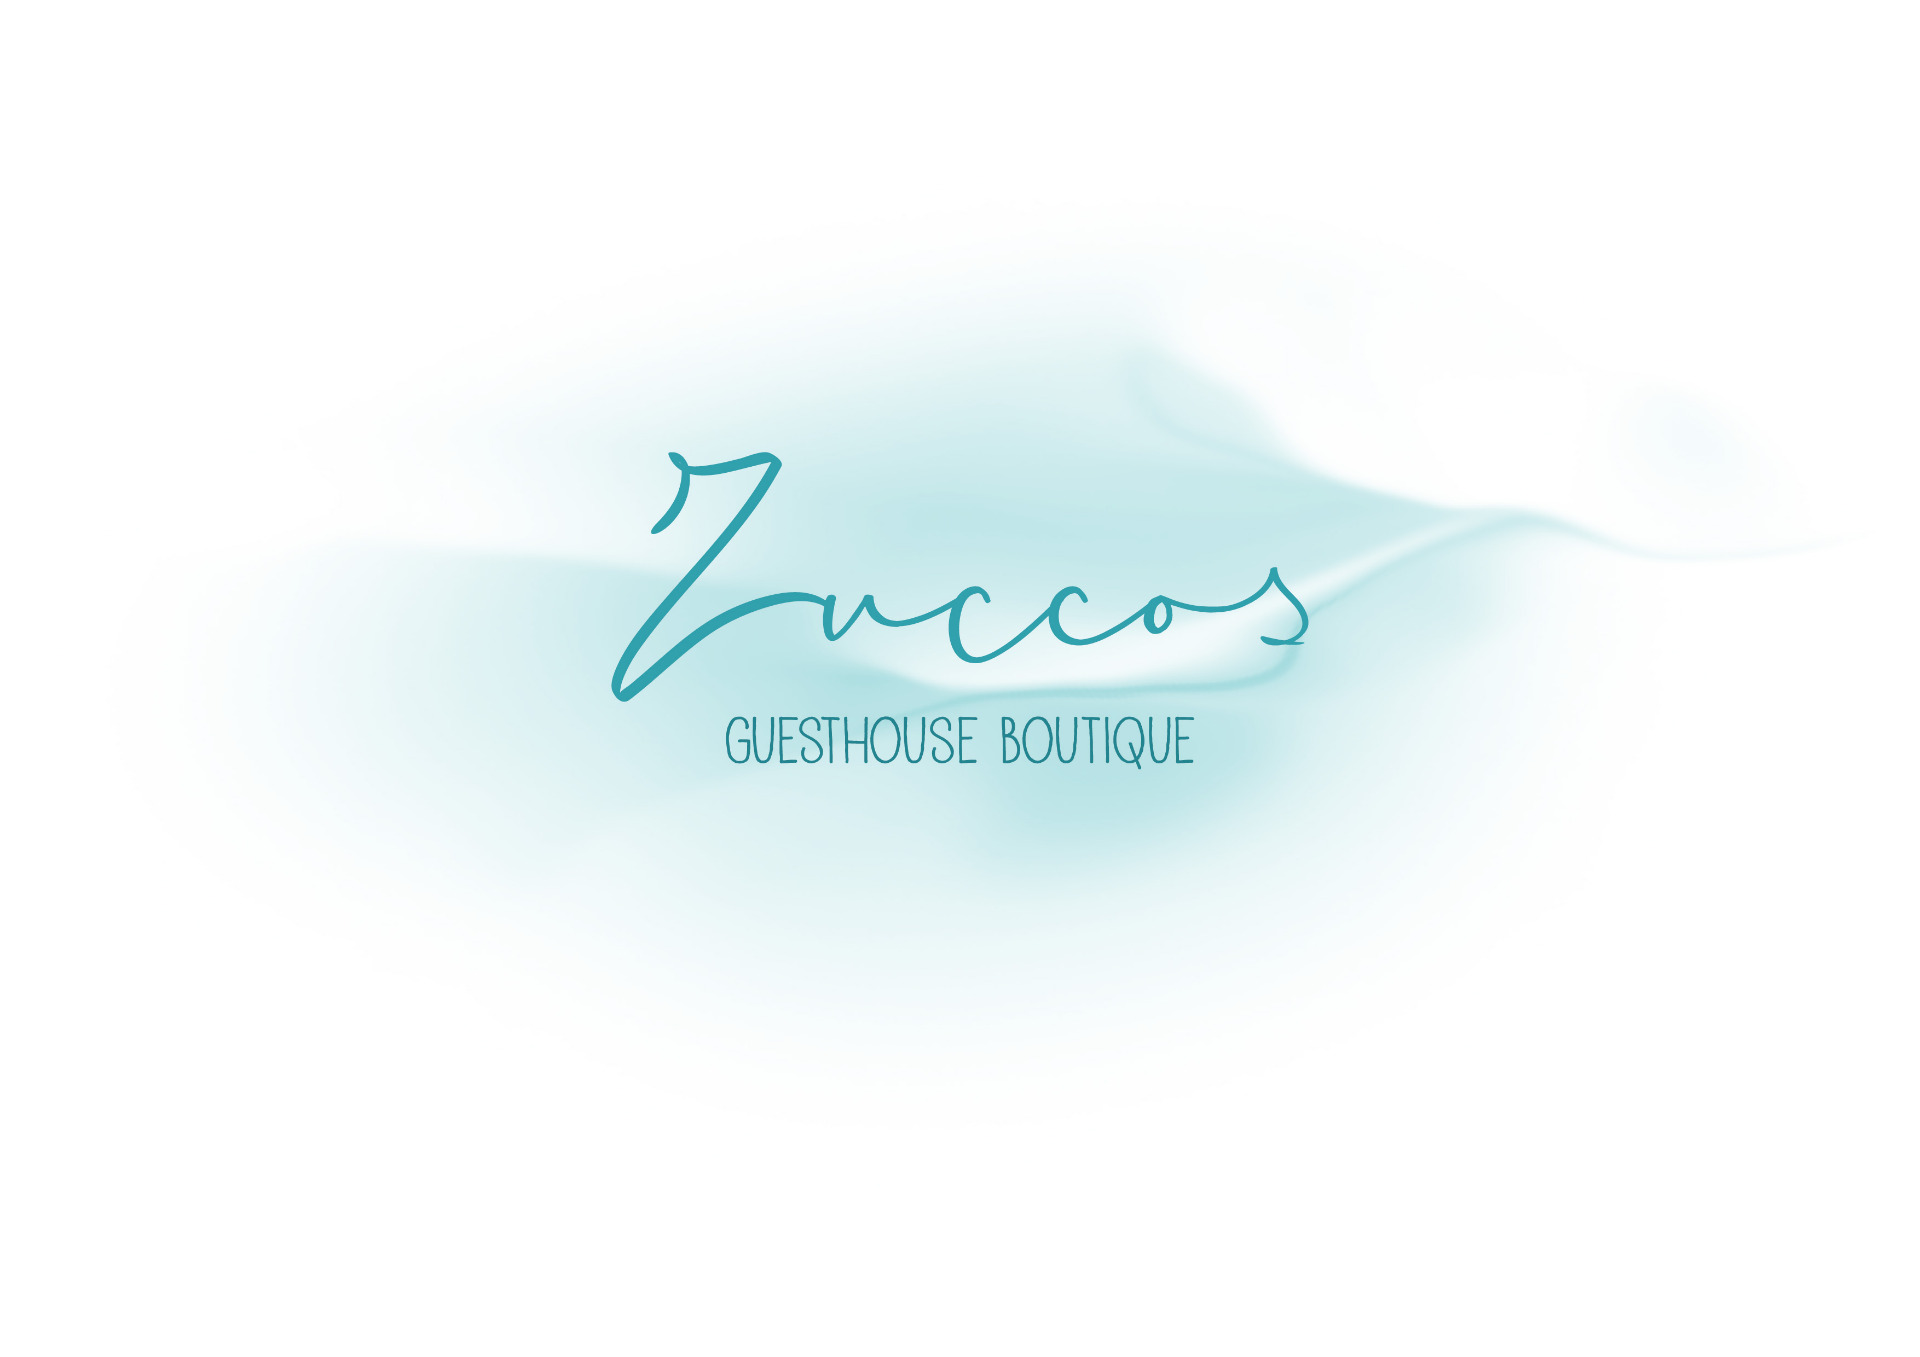 Zuccos Guesthouse Boutique